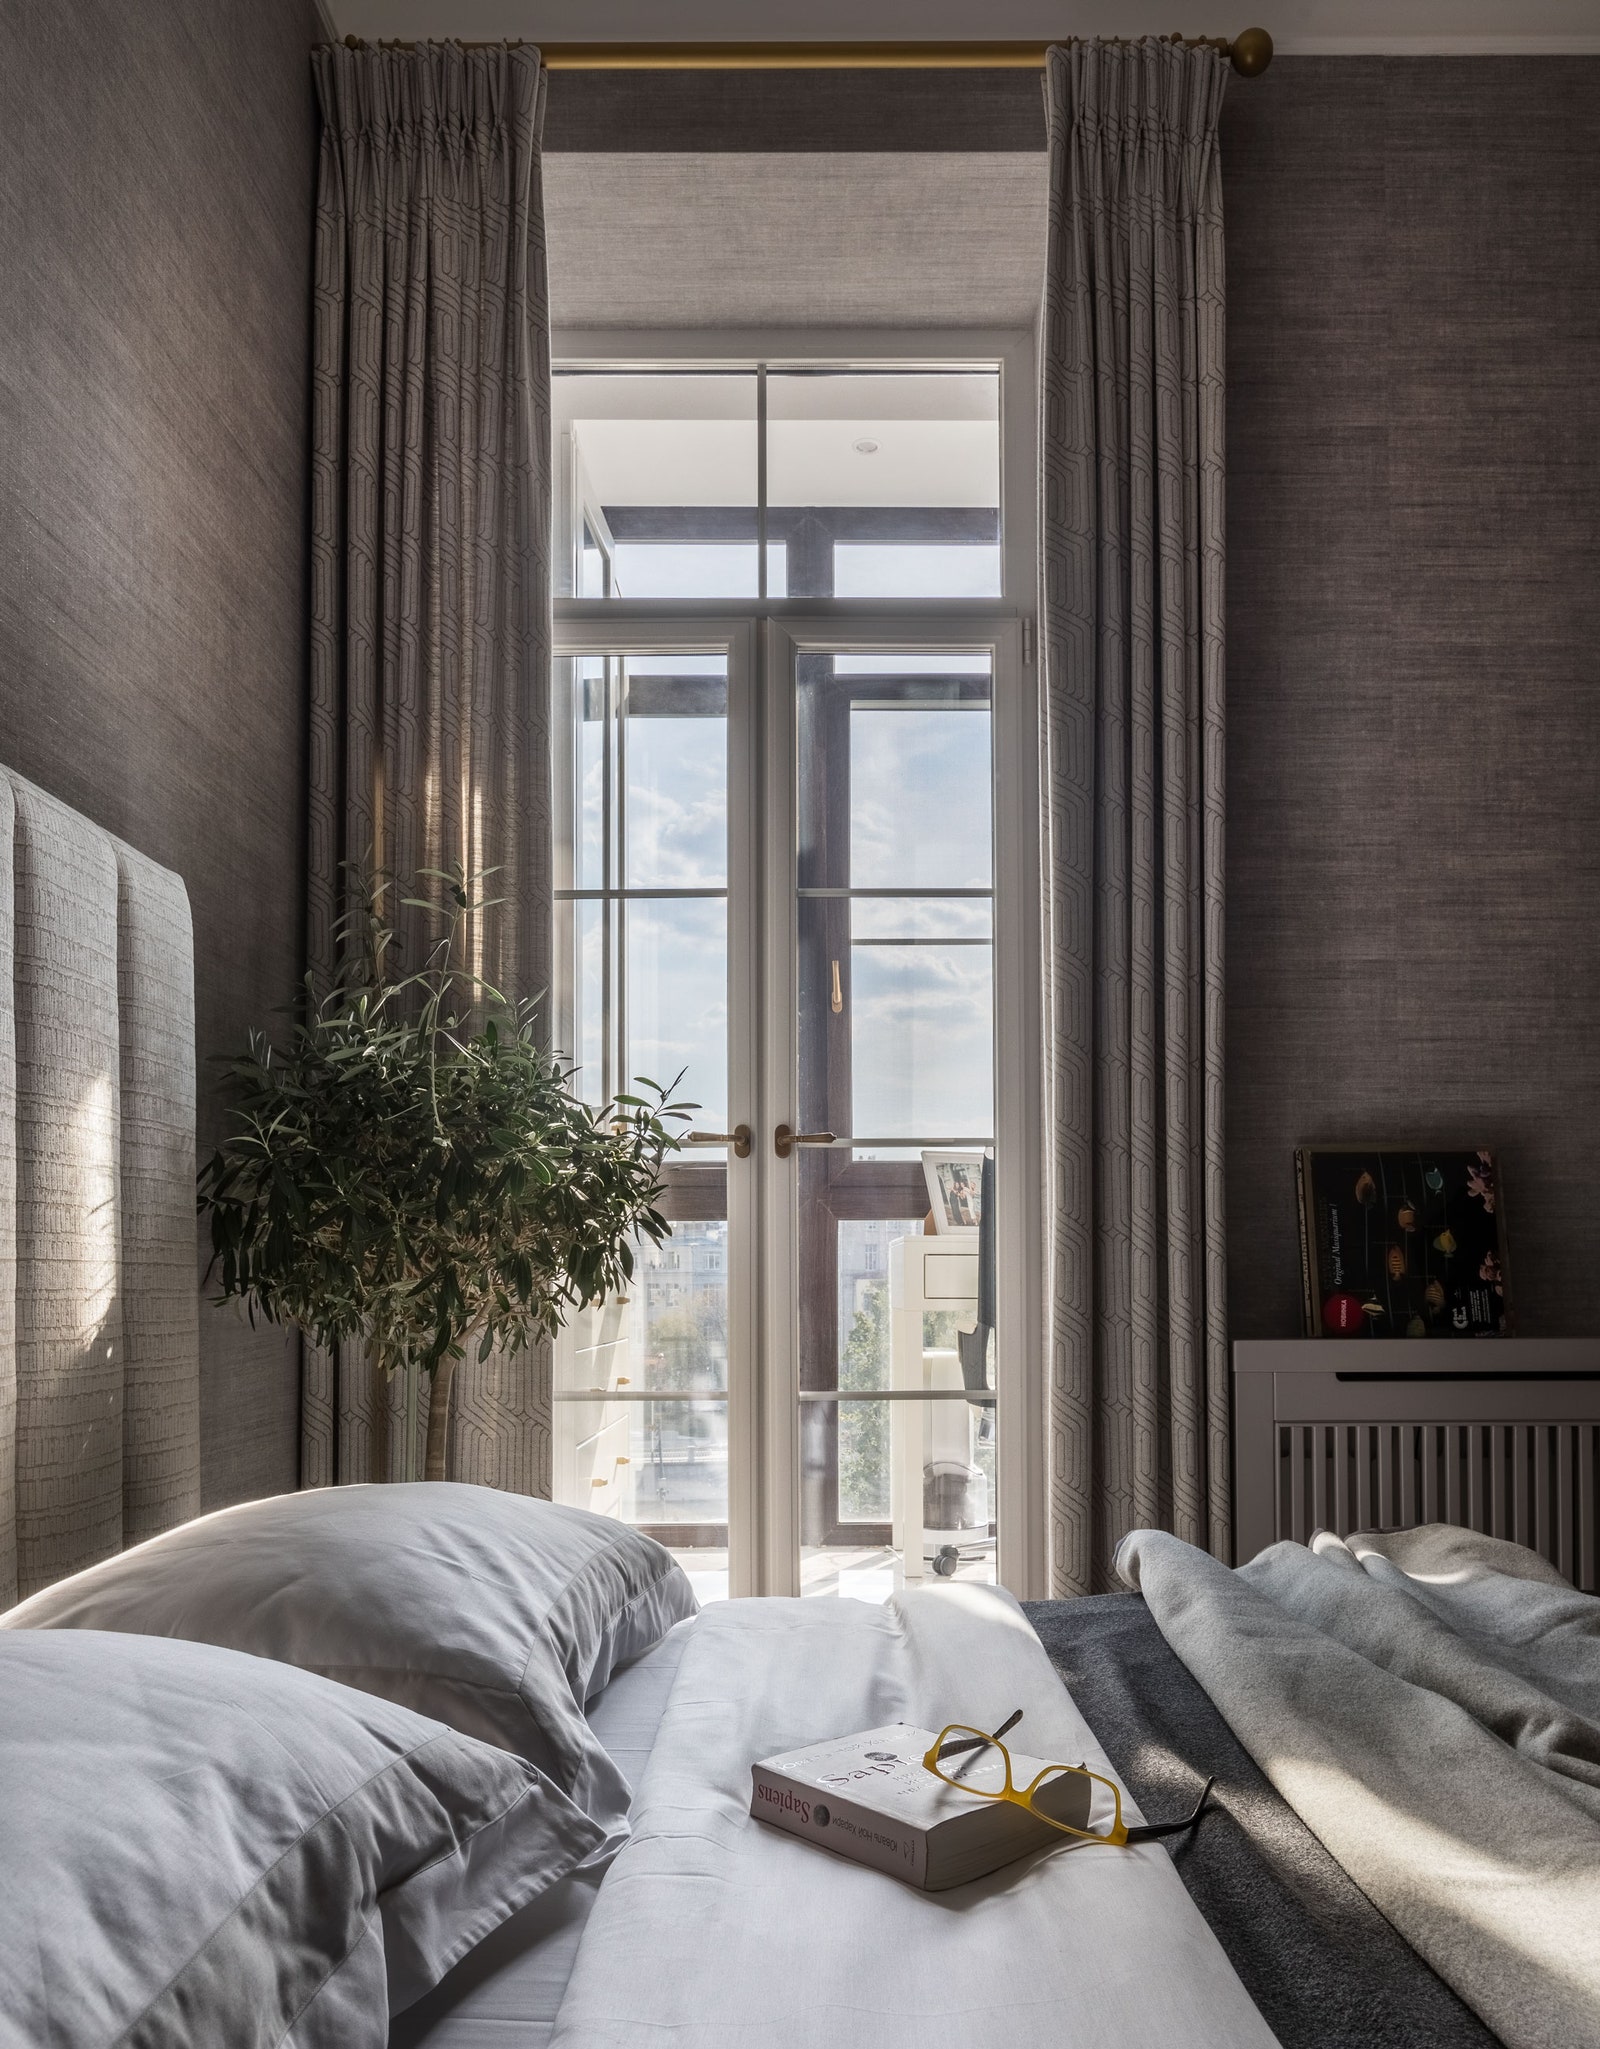 Стены спальни оклеены обоями Arte кровать сделана на заказ постельное белье Amalia керамический столик Savour.Design.